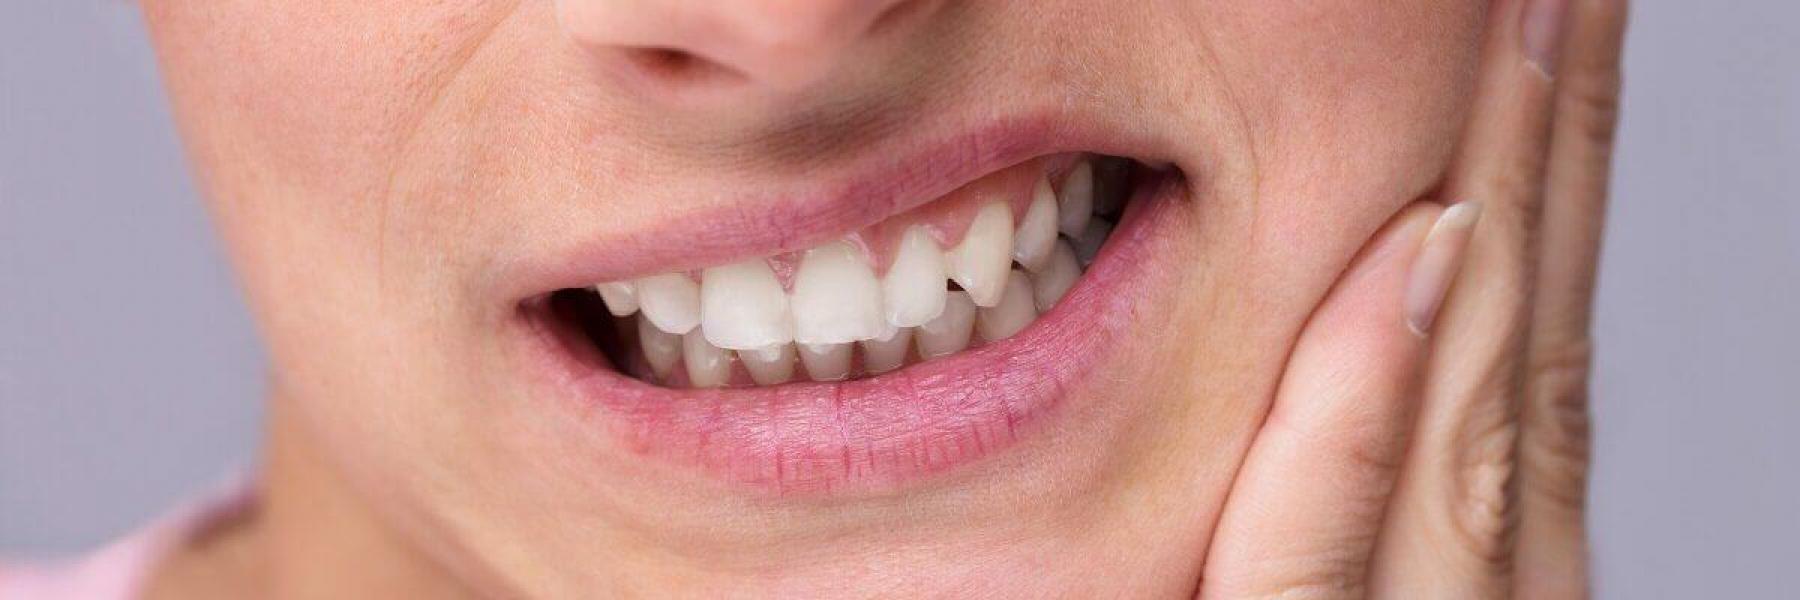 أسباب حساسية الأسنان للحرارة والبرودة وكيفية علاجها